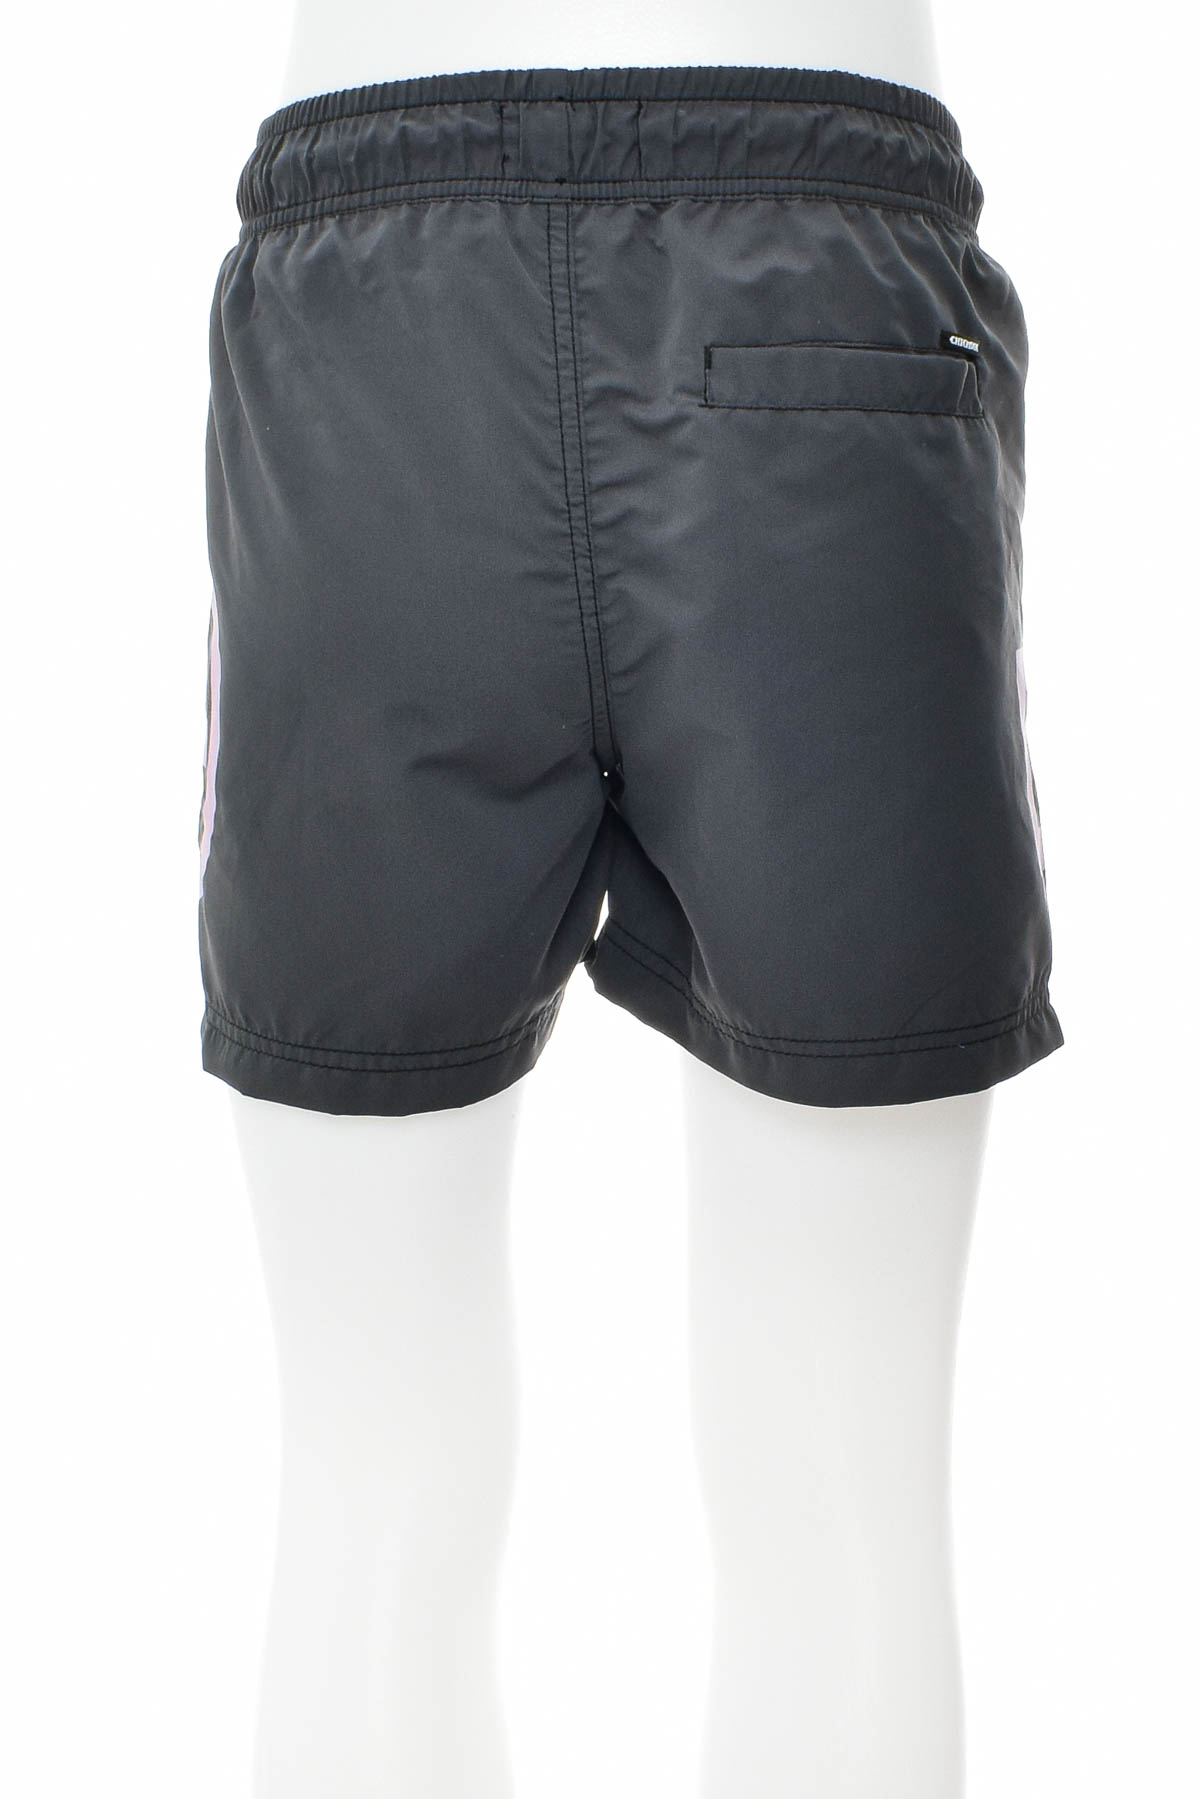 Men's shorts - Chiemsee - 1